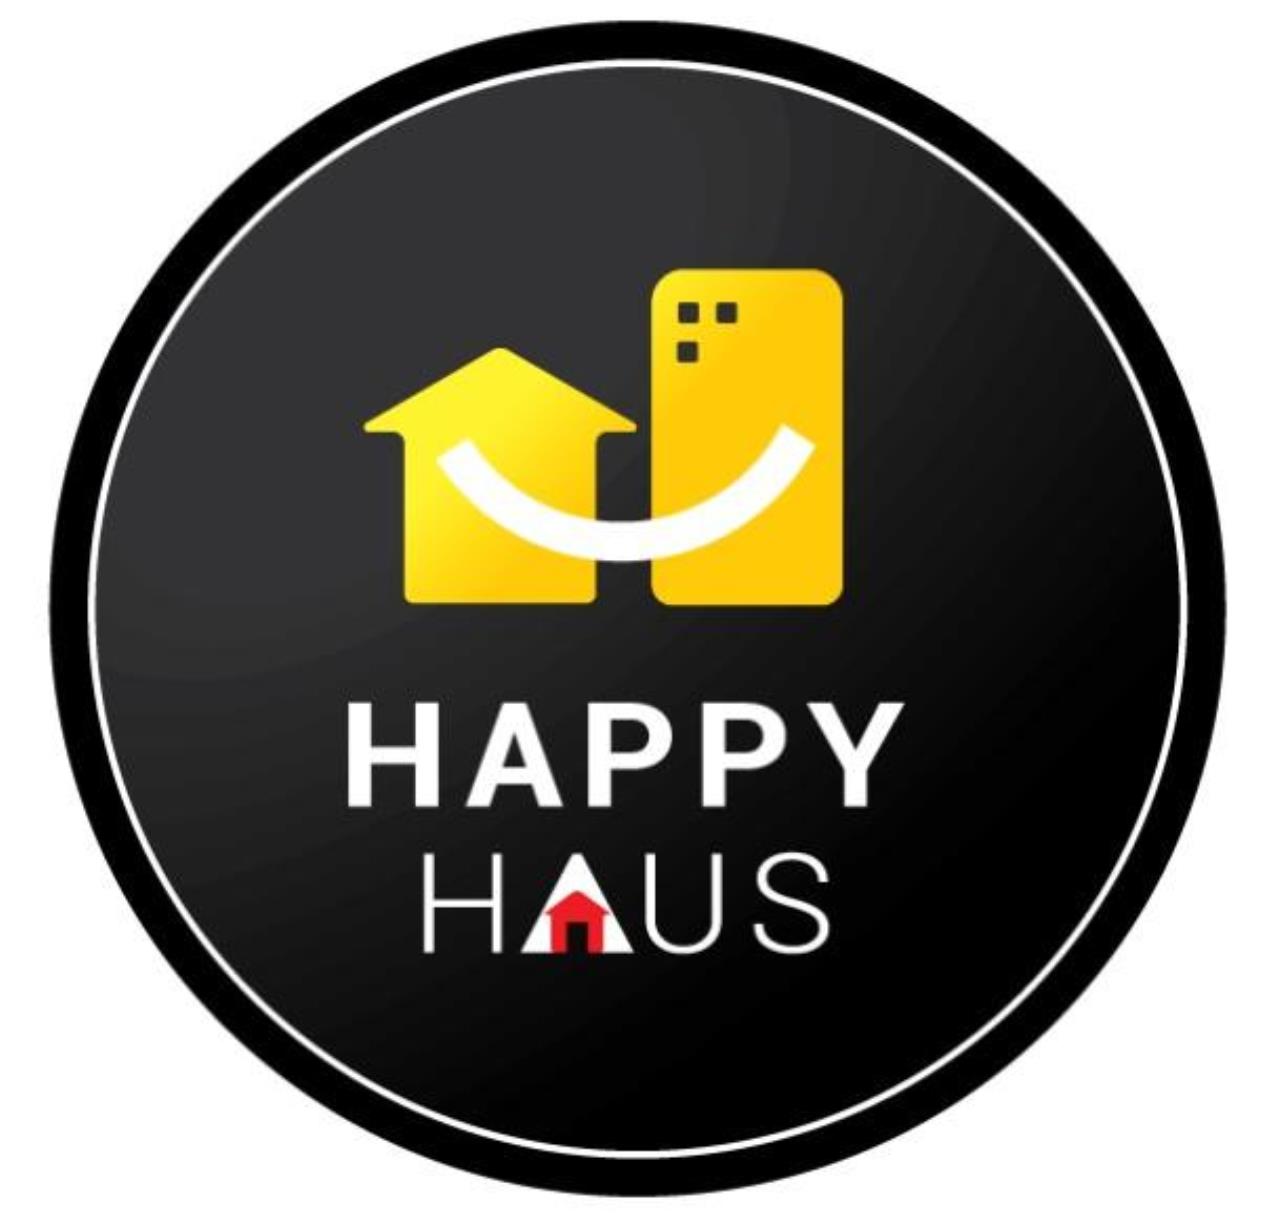 The Happy Haus logo